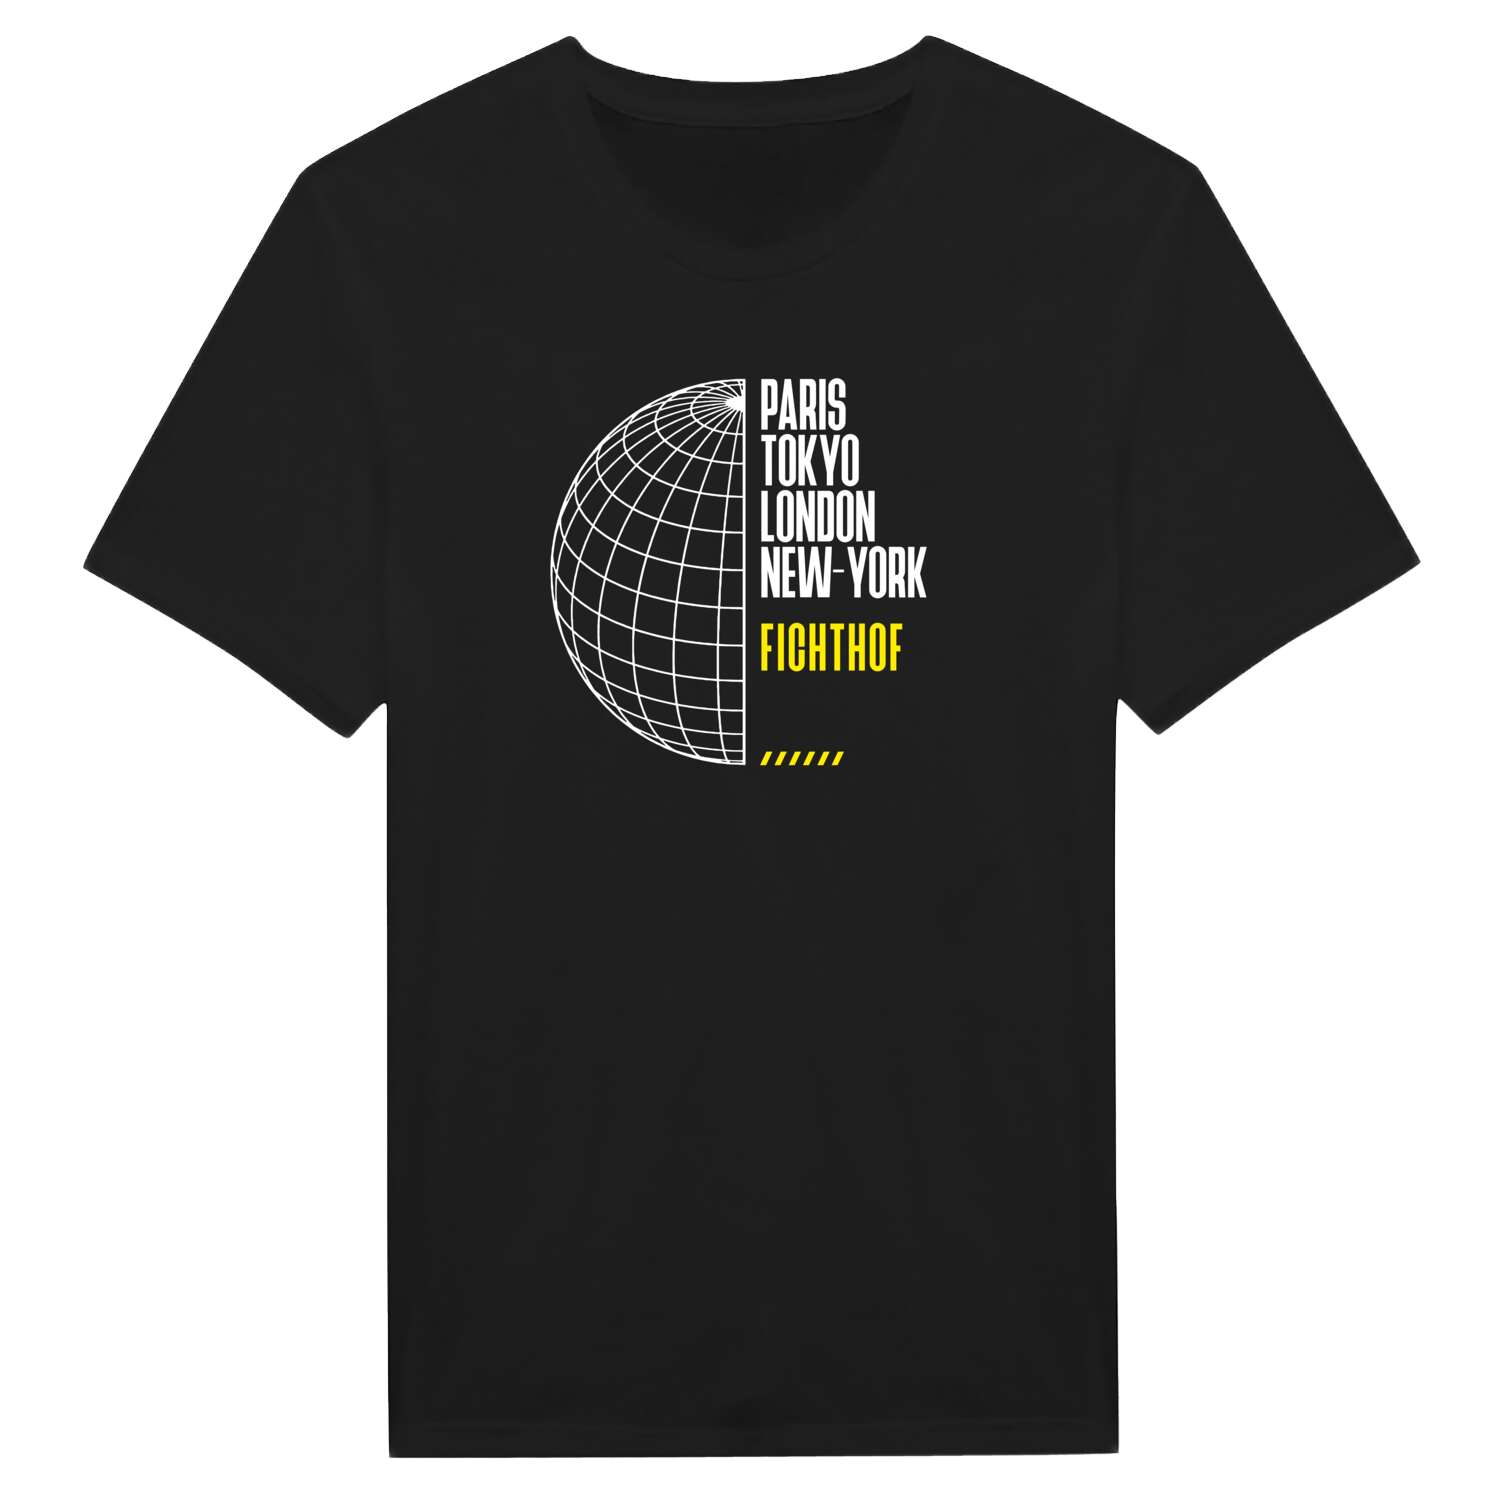 Fichthof T-Shirt »Paris Tokyo London«